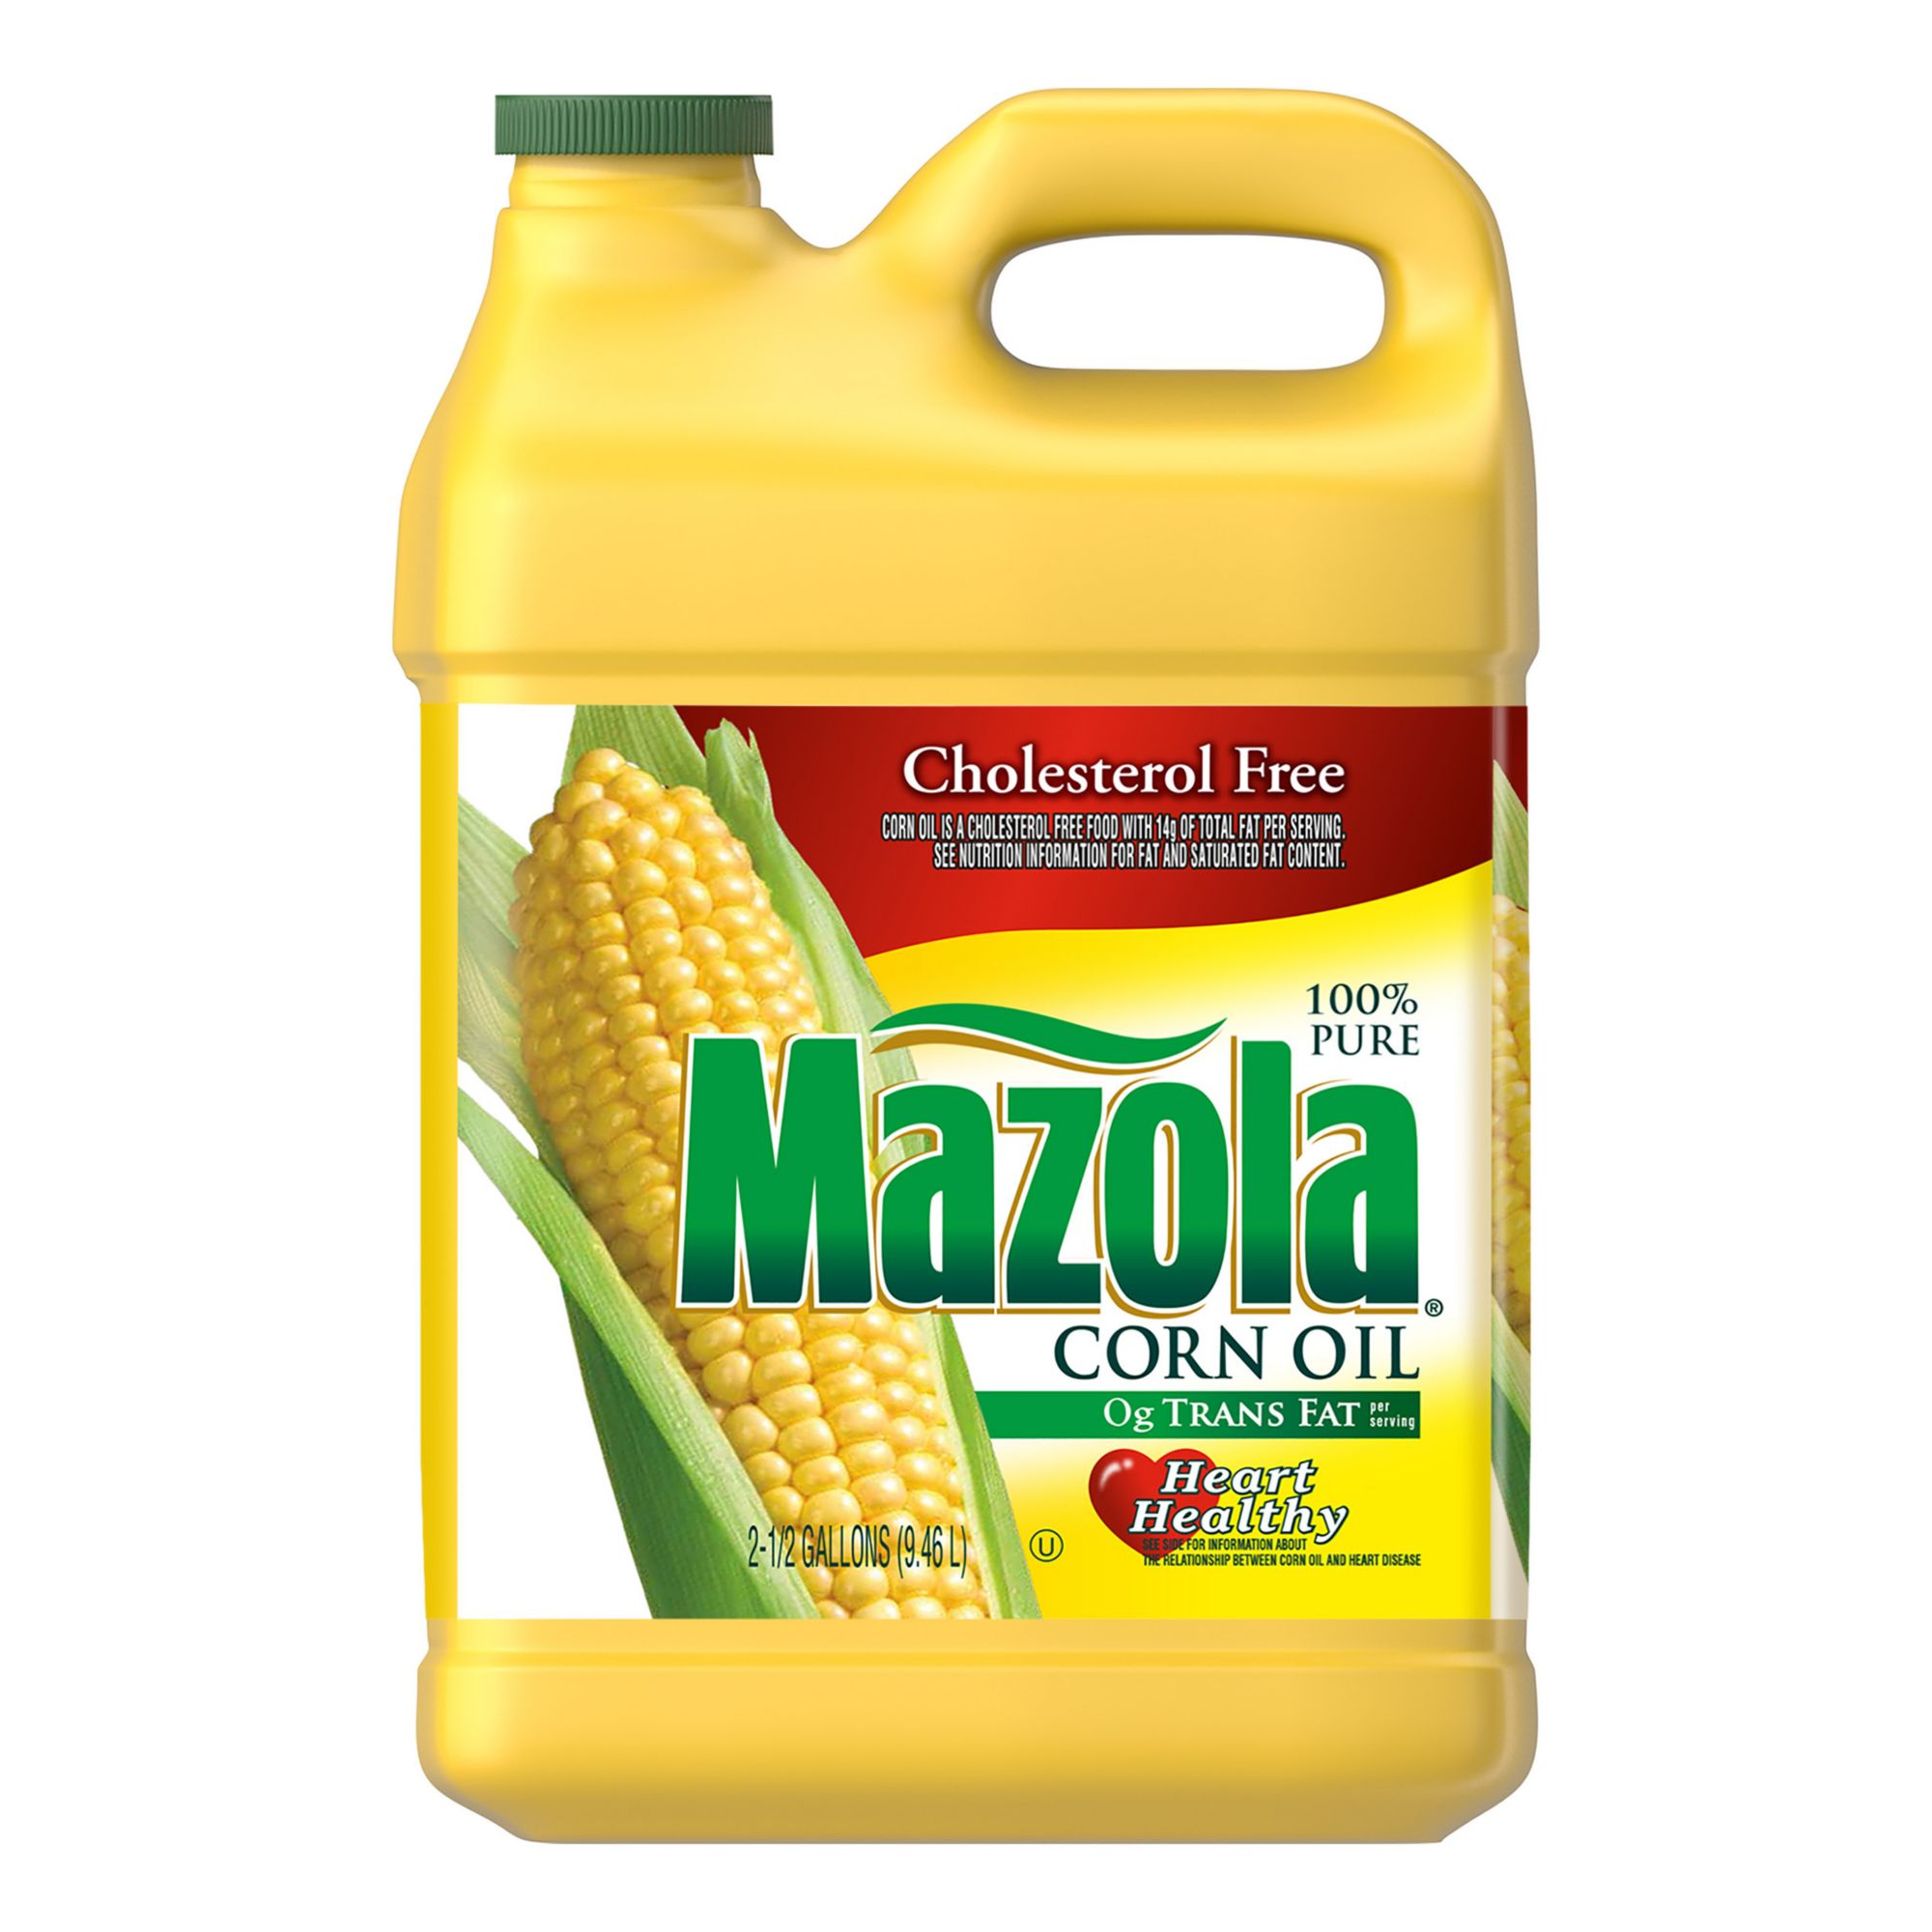 Mazola Pure Corn Oil, 2.5 gal